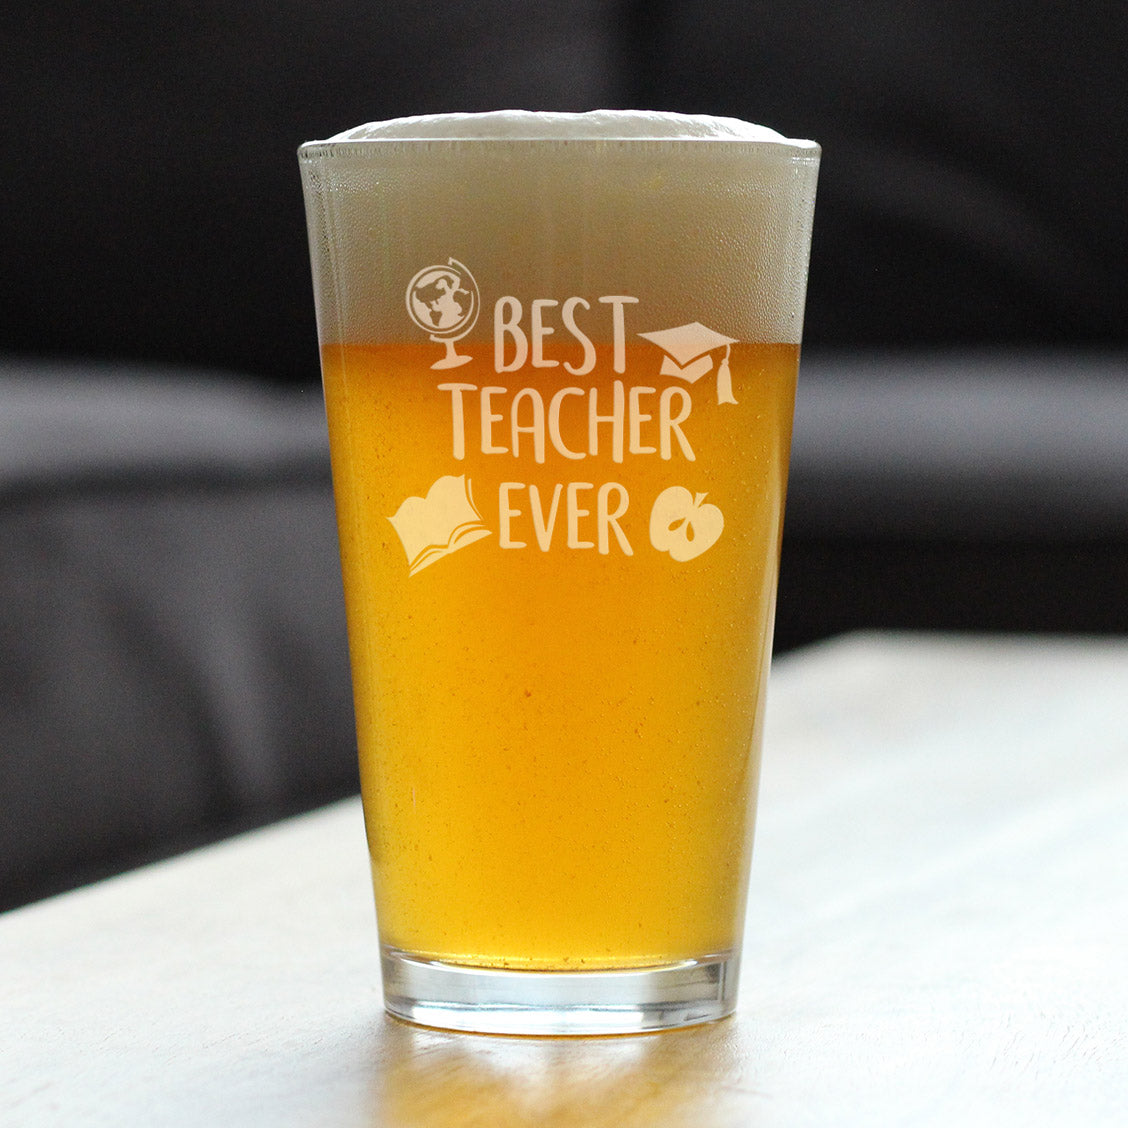 Best Teacher Ever - Pint Glass for Beer - Cute Funny Teacher Gifts for Women &amp; Men - Fun School Decor - 16 oz Glasses